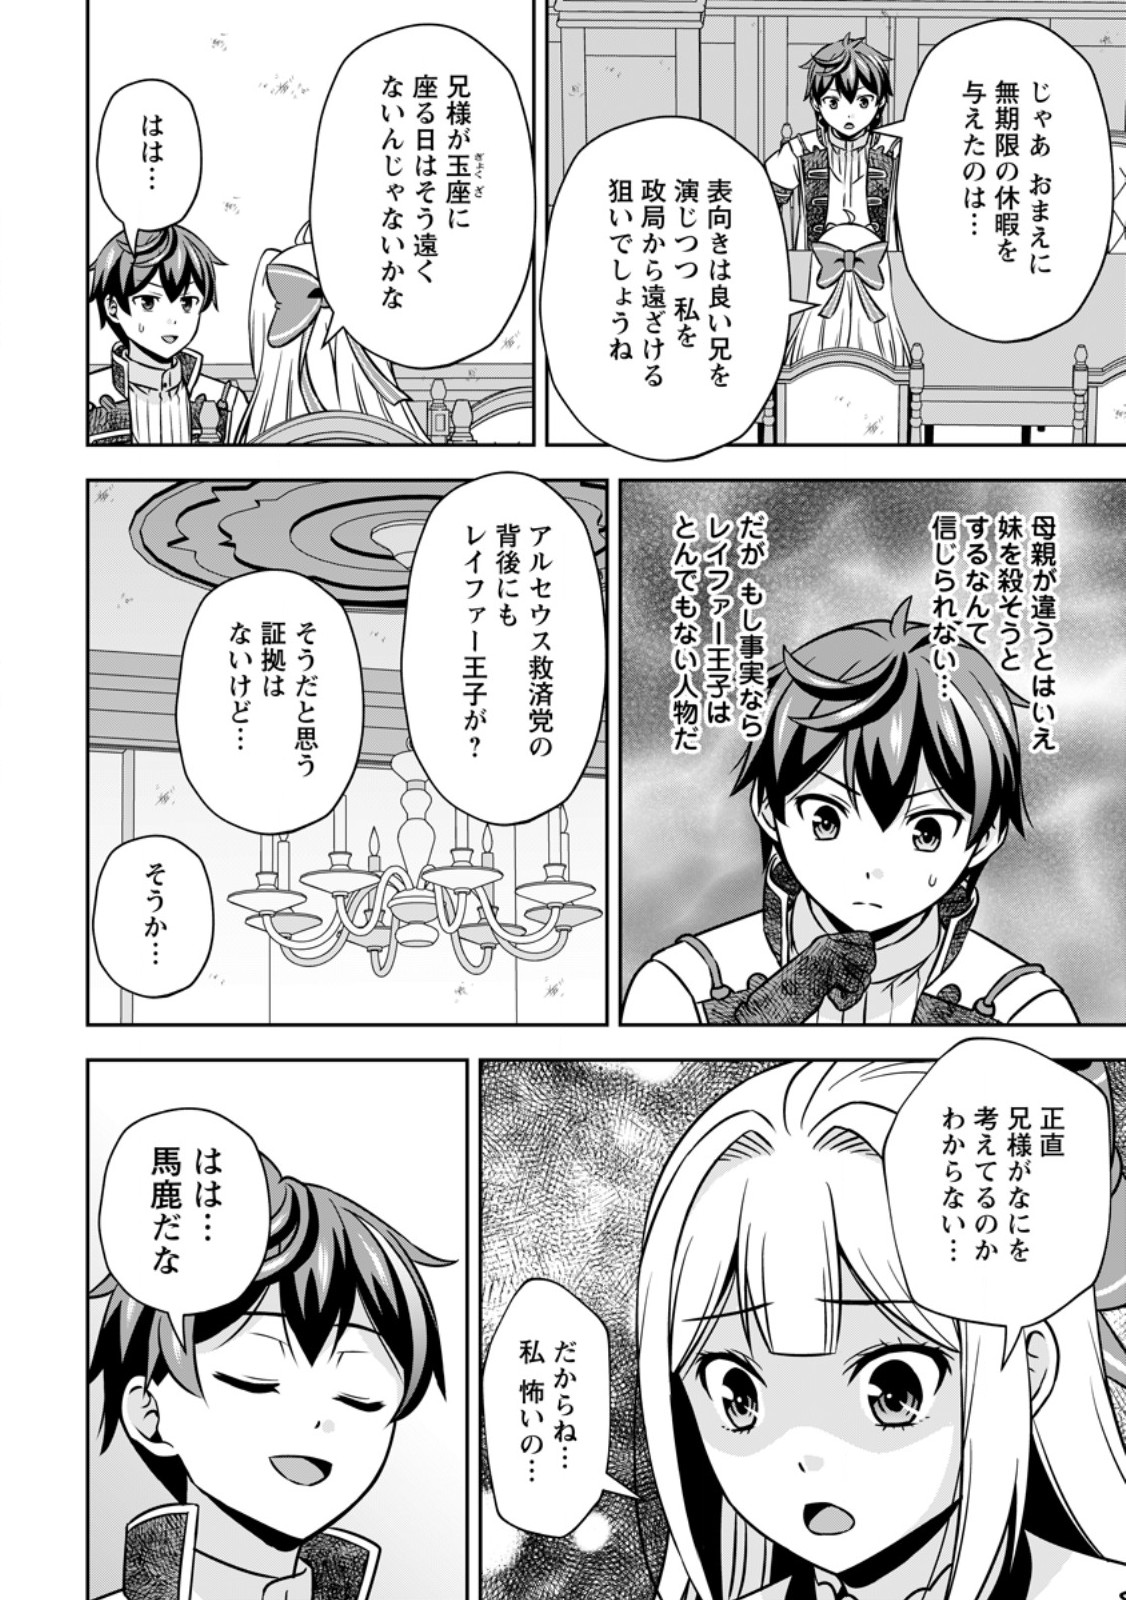 Oi, Hazure Skill dato Omowareteita Cheat Code Sousa ga Bakemono Sugiru ndaga (Tomokichi) - Chapter 16.3 - Page 4